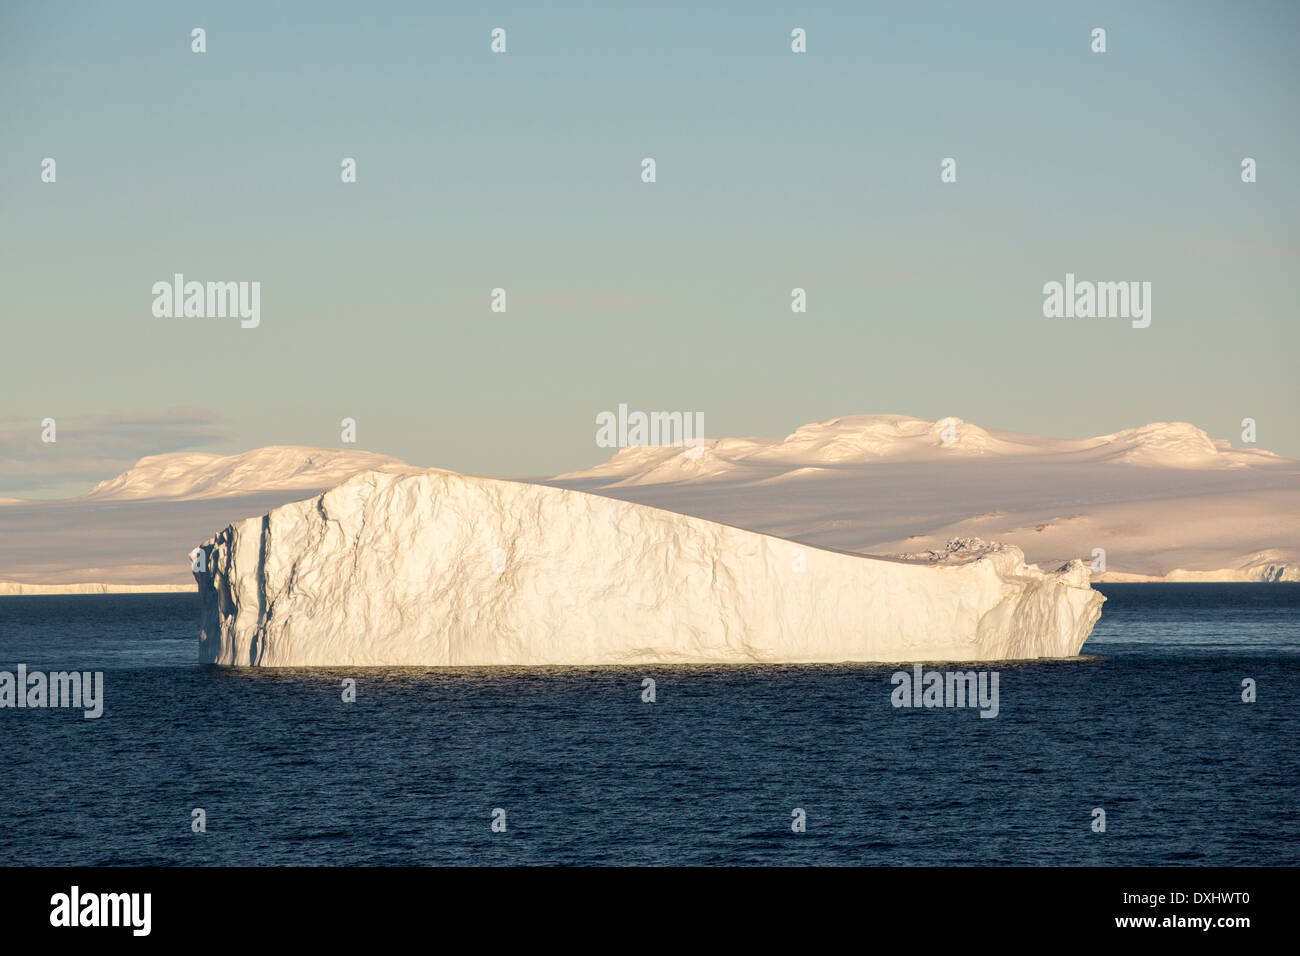 Eine tabellarische Eisberg Livoinstone Insel auf der antarktischen Halbinsel. Die Halbinsel ist eines der am schnellsten Erwärmung Orte Stockfoto